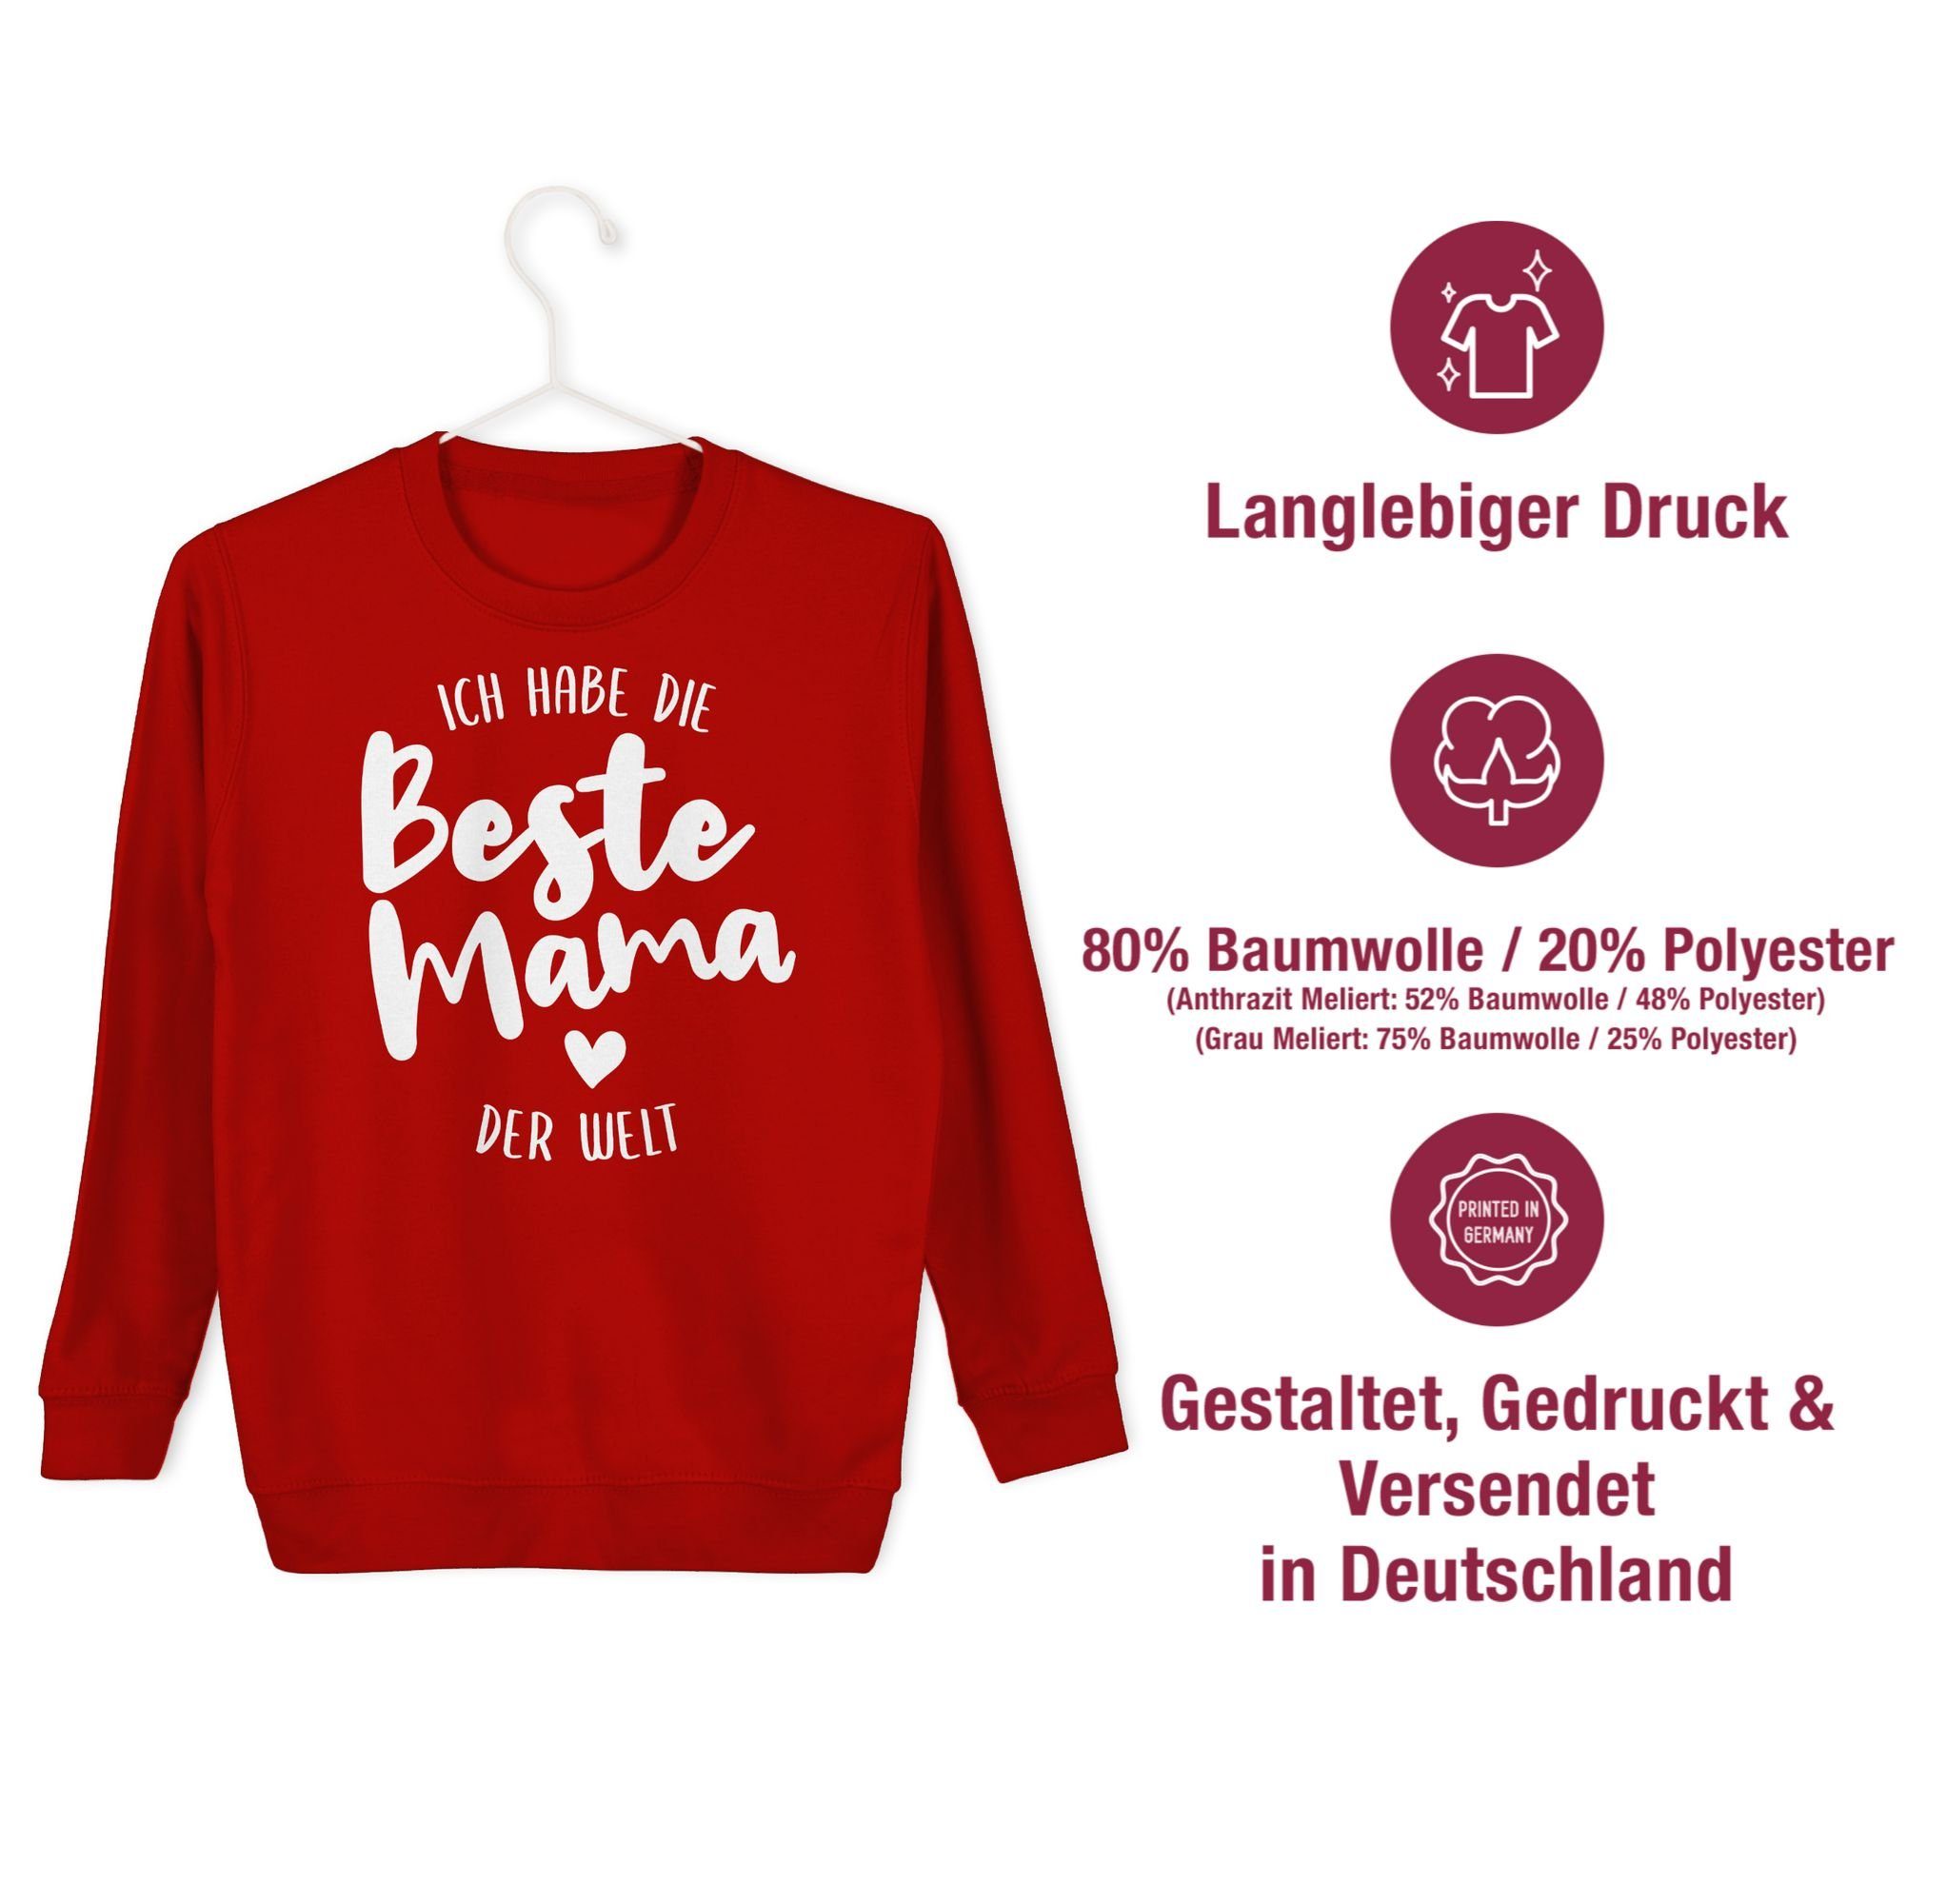 Shirtracer Sweatshirt Ich habe die Mama Welt Muttertagsgeschenk beste Rot 2 der